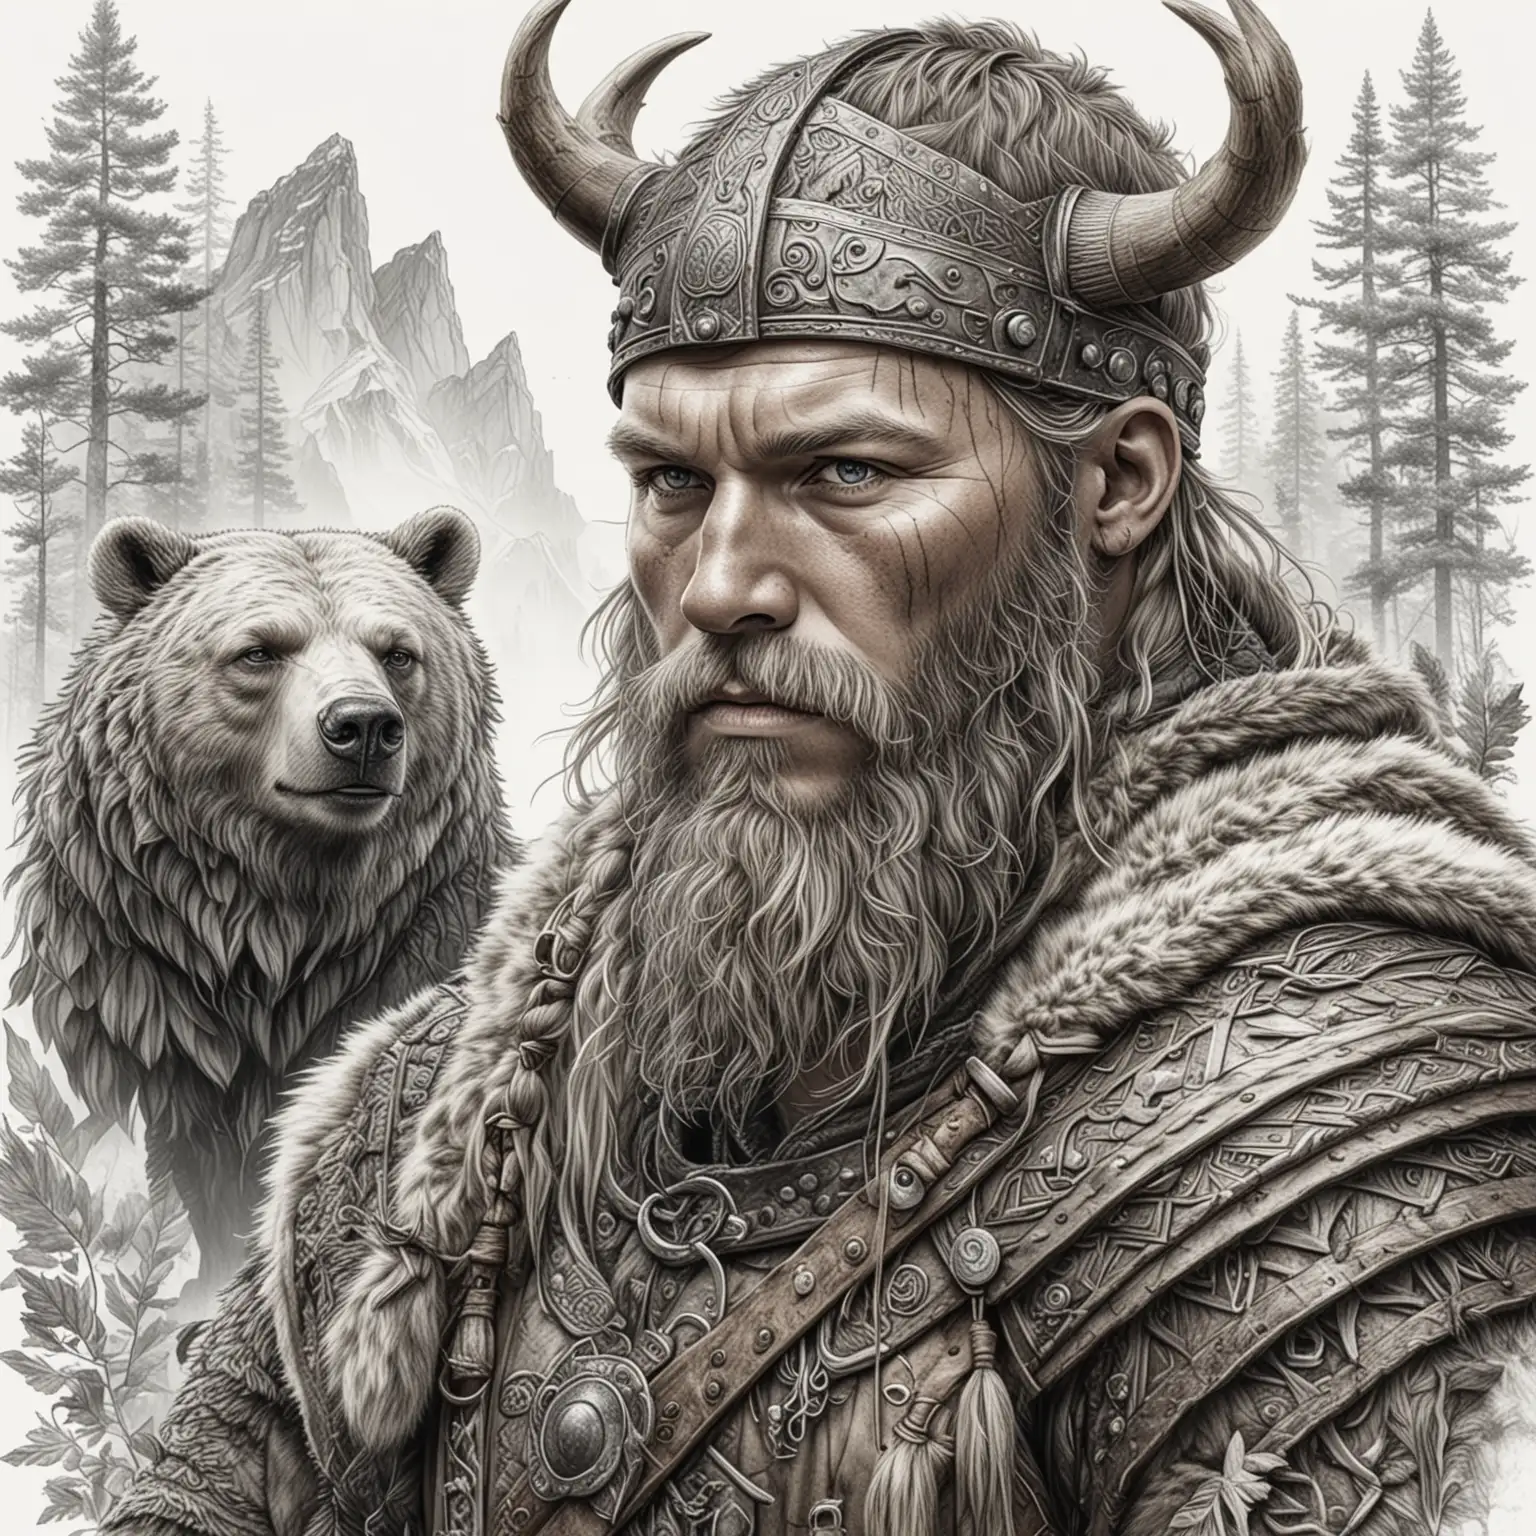 реалистичный максимально детализированный  мужчина викинг  рядом  с ними медведь на белом фоне  с  элементами природы рисунок в стиле карандашной графики 